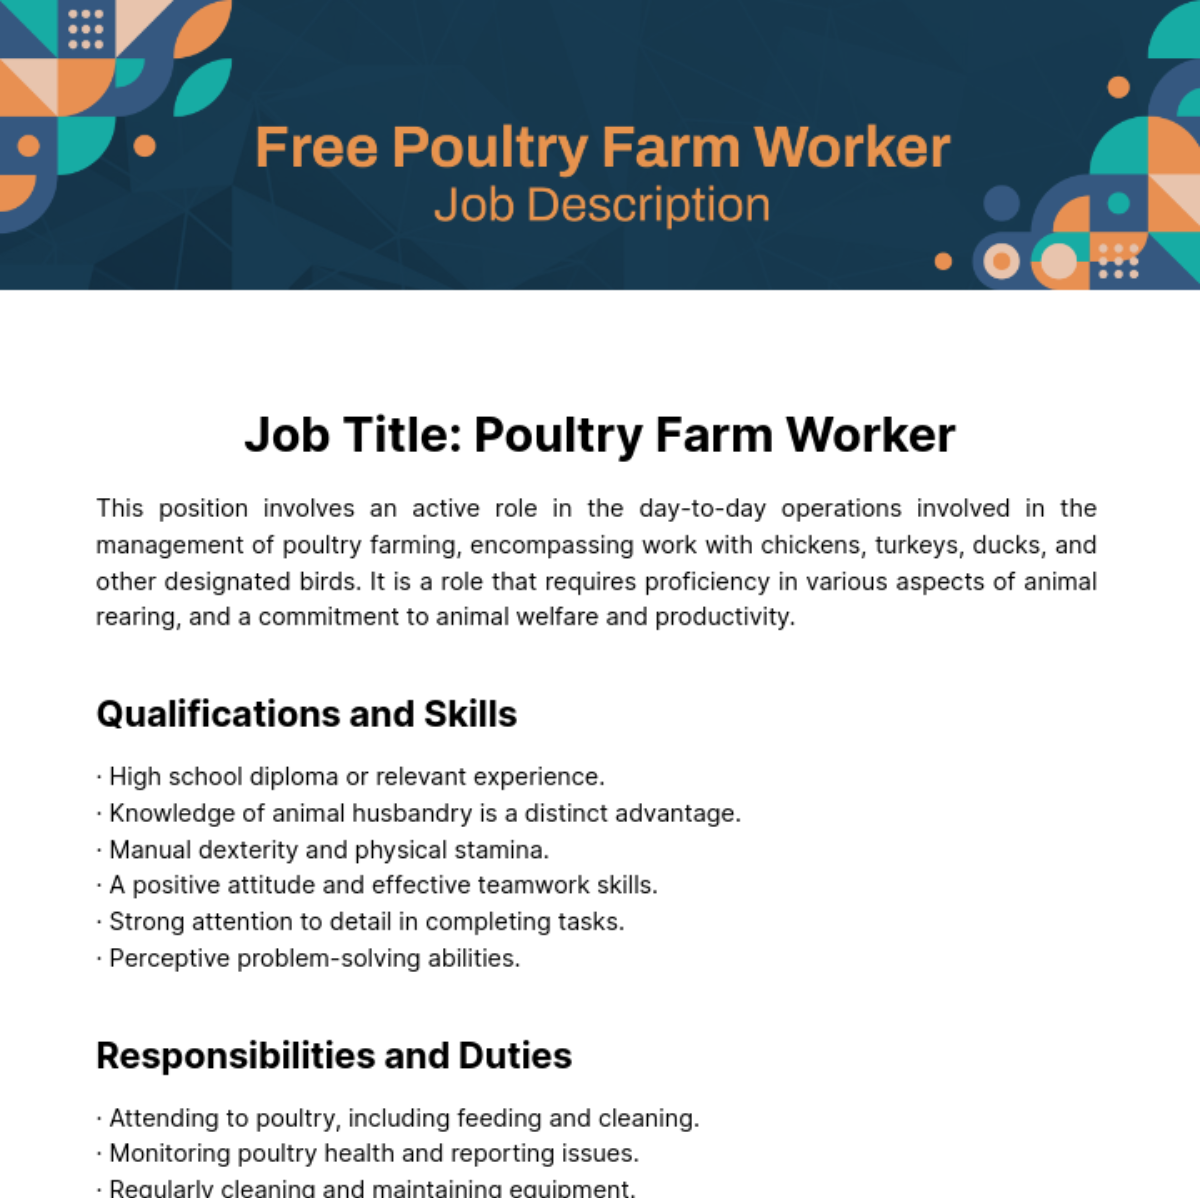 Free Poultry Farm Worker Job Description Template